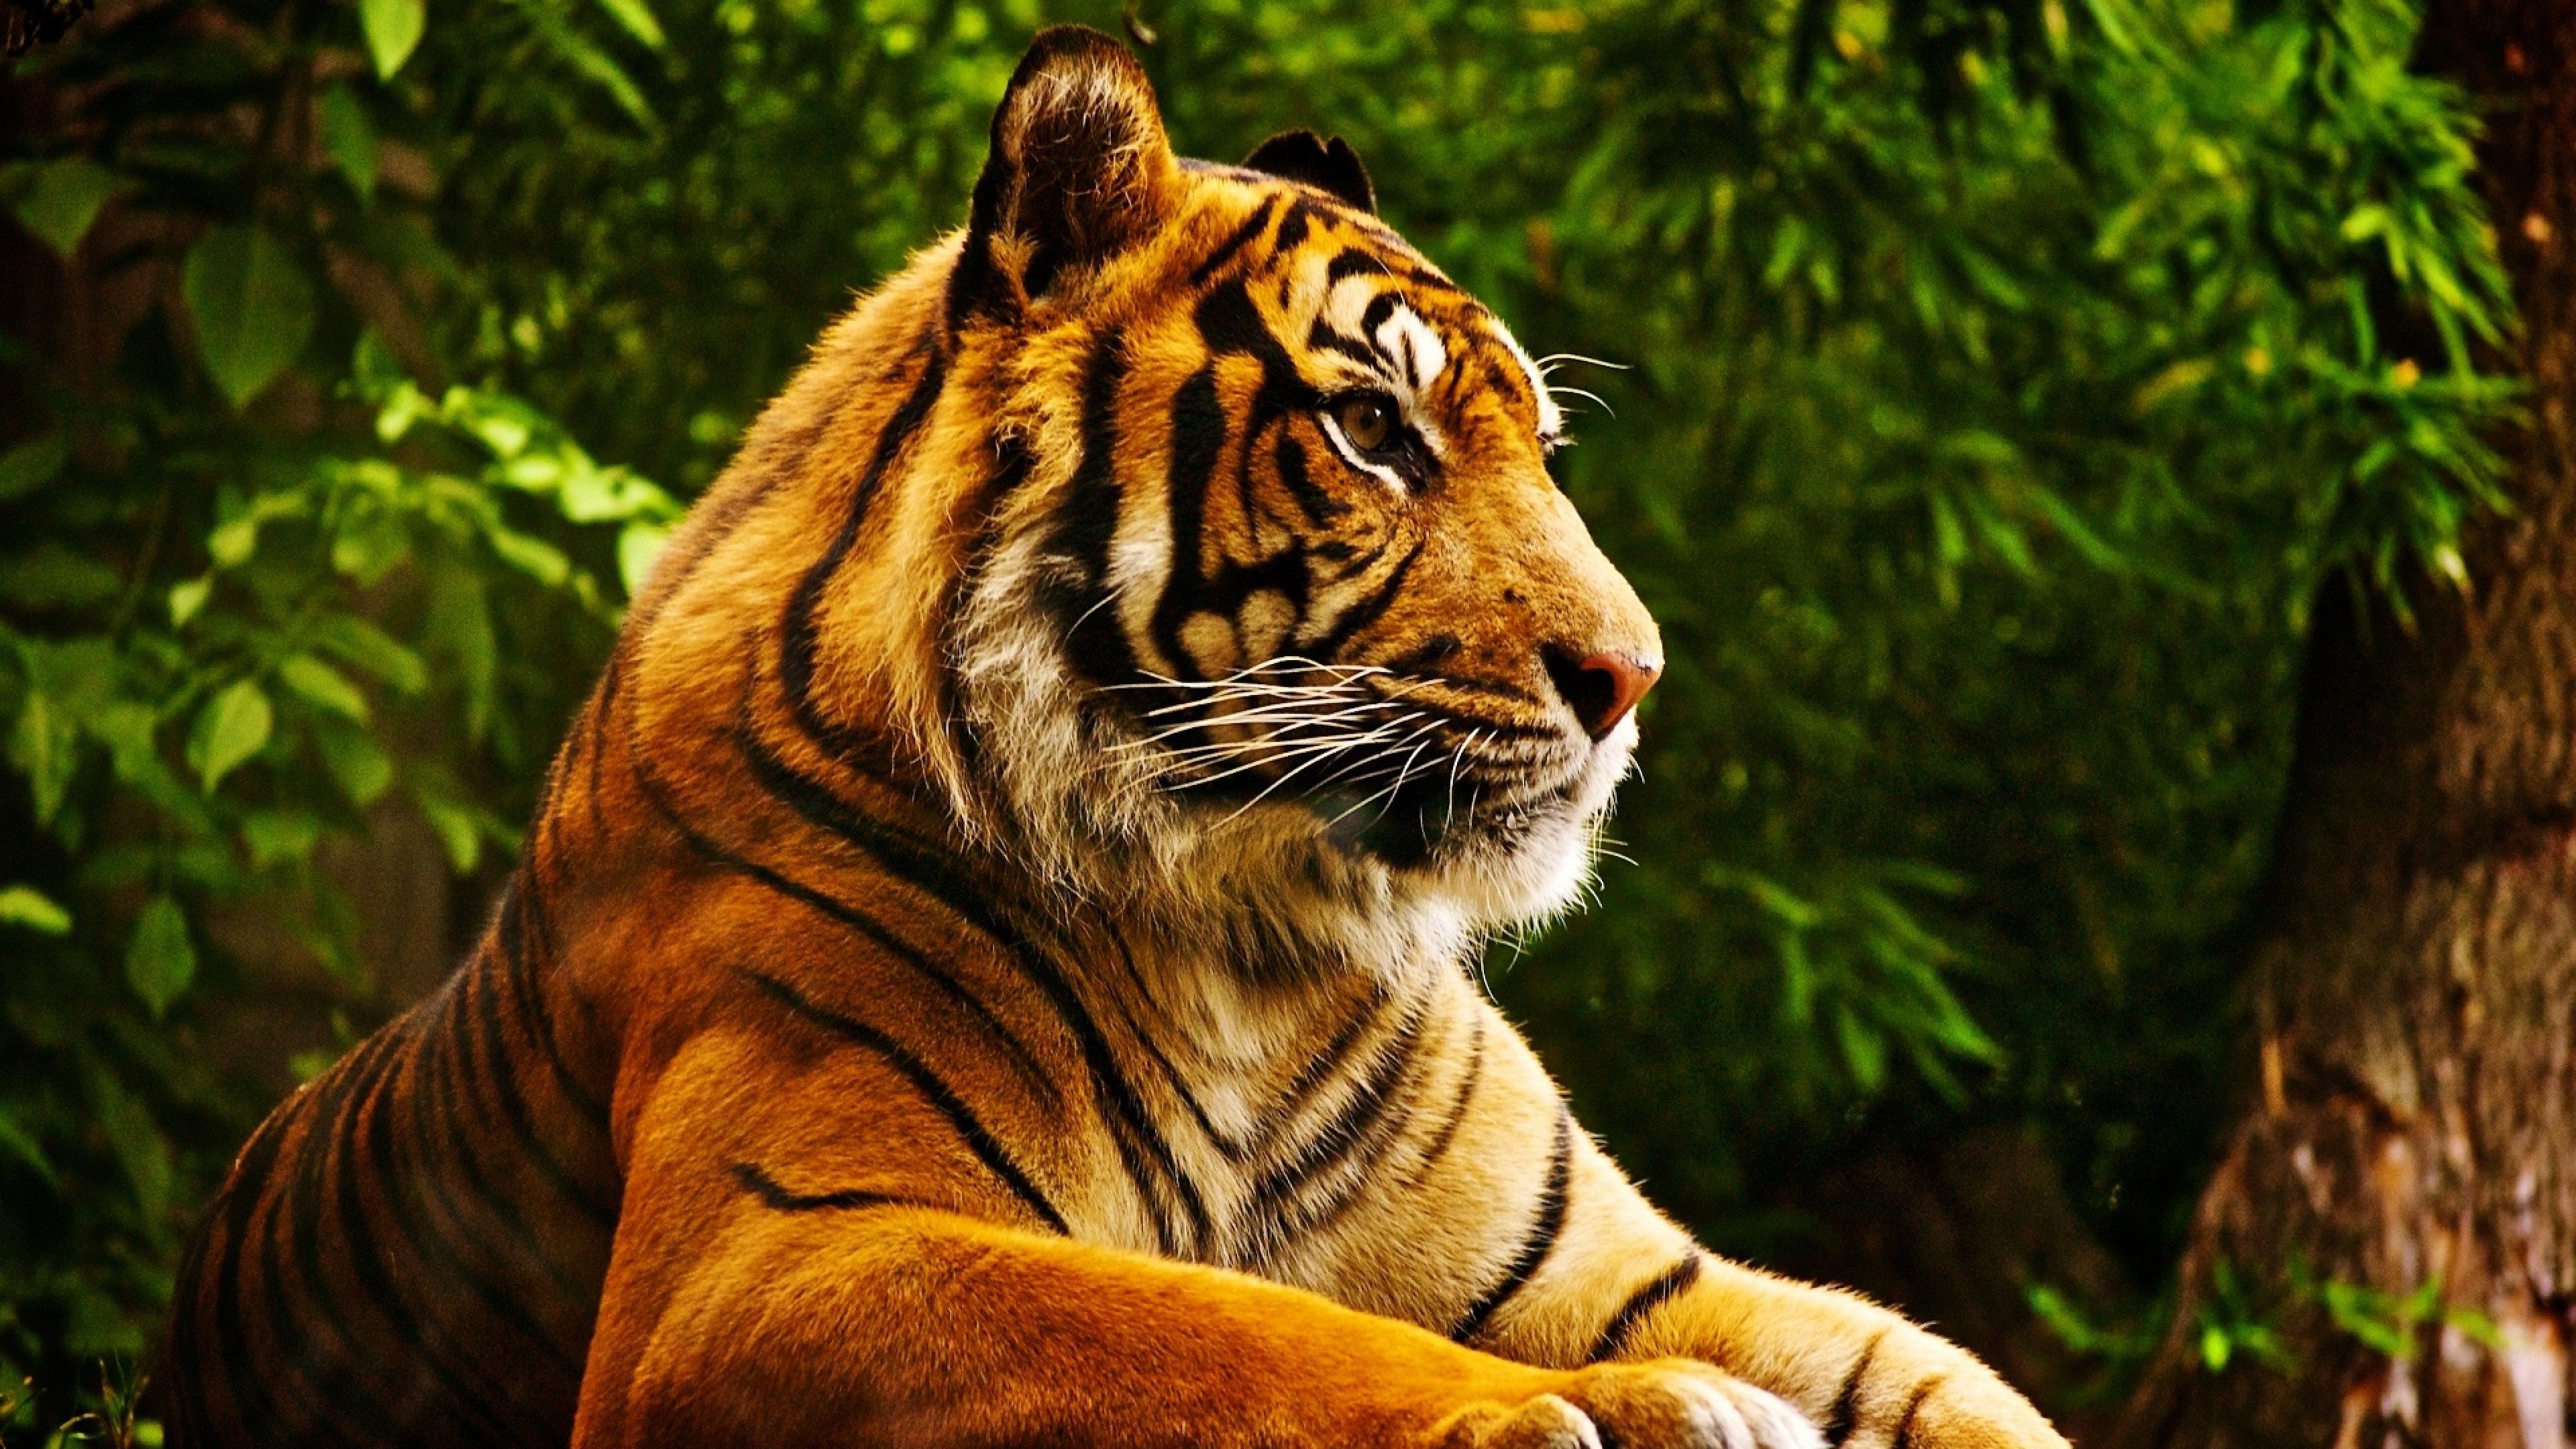 General 3840x2160 animals tropical forest tiger mammals big cats closeup